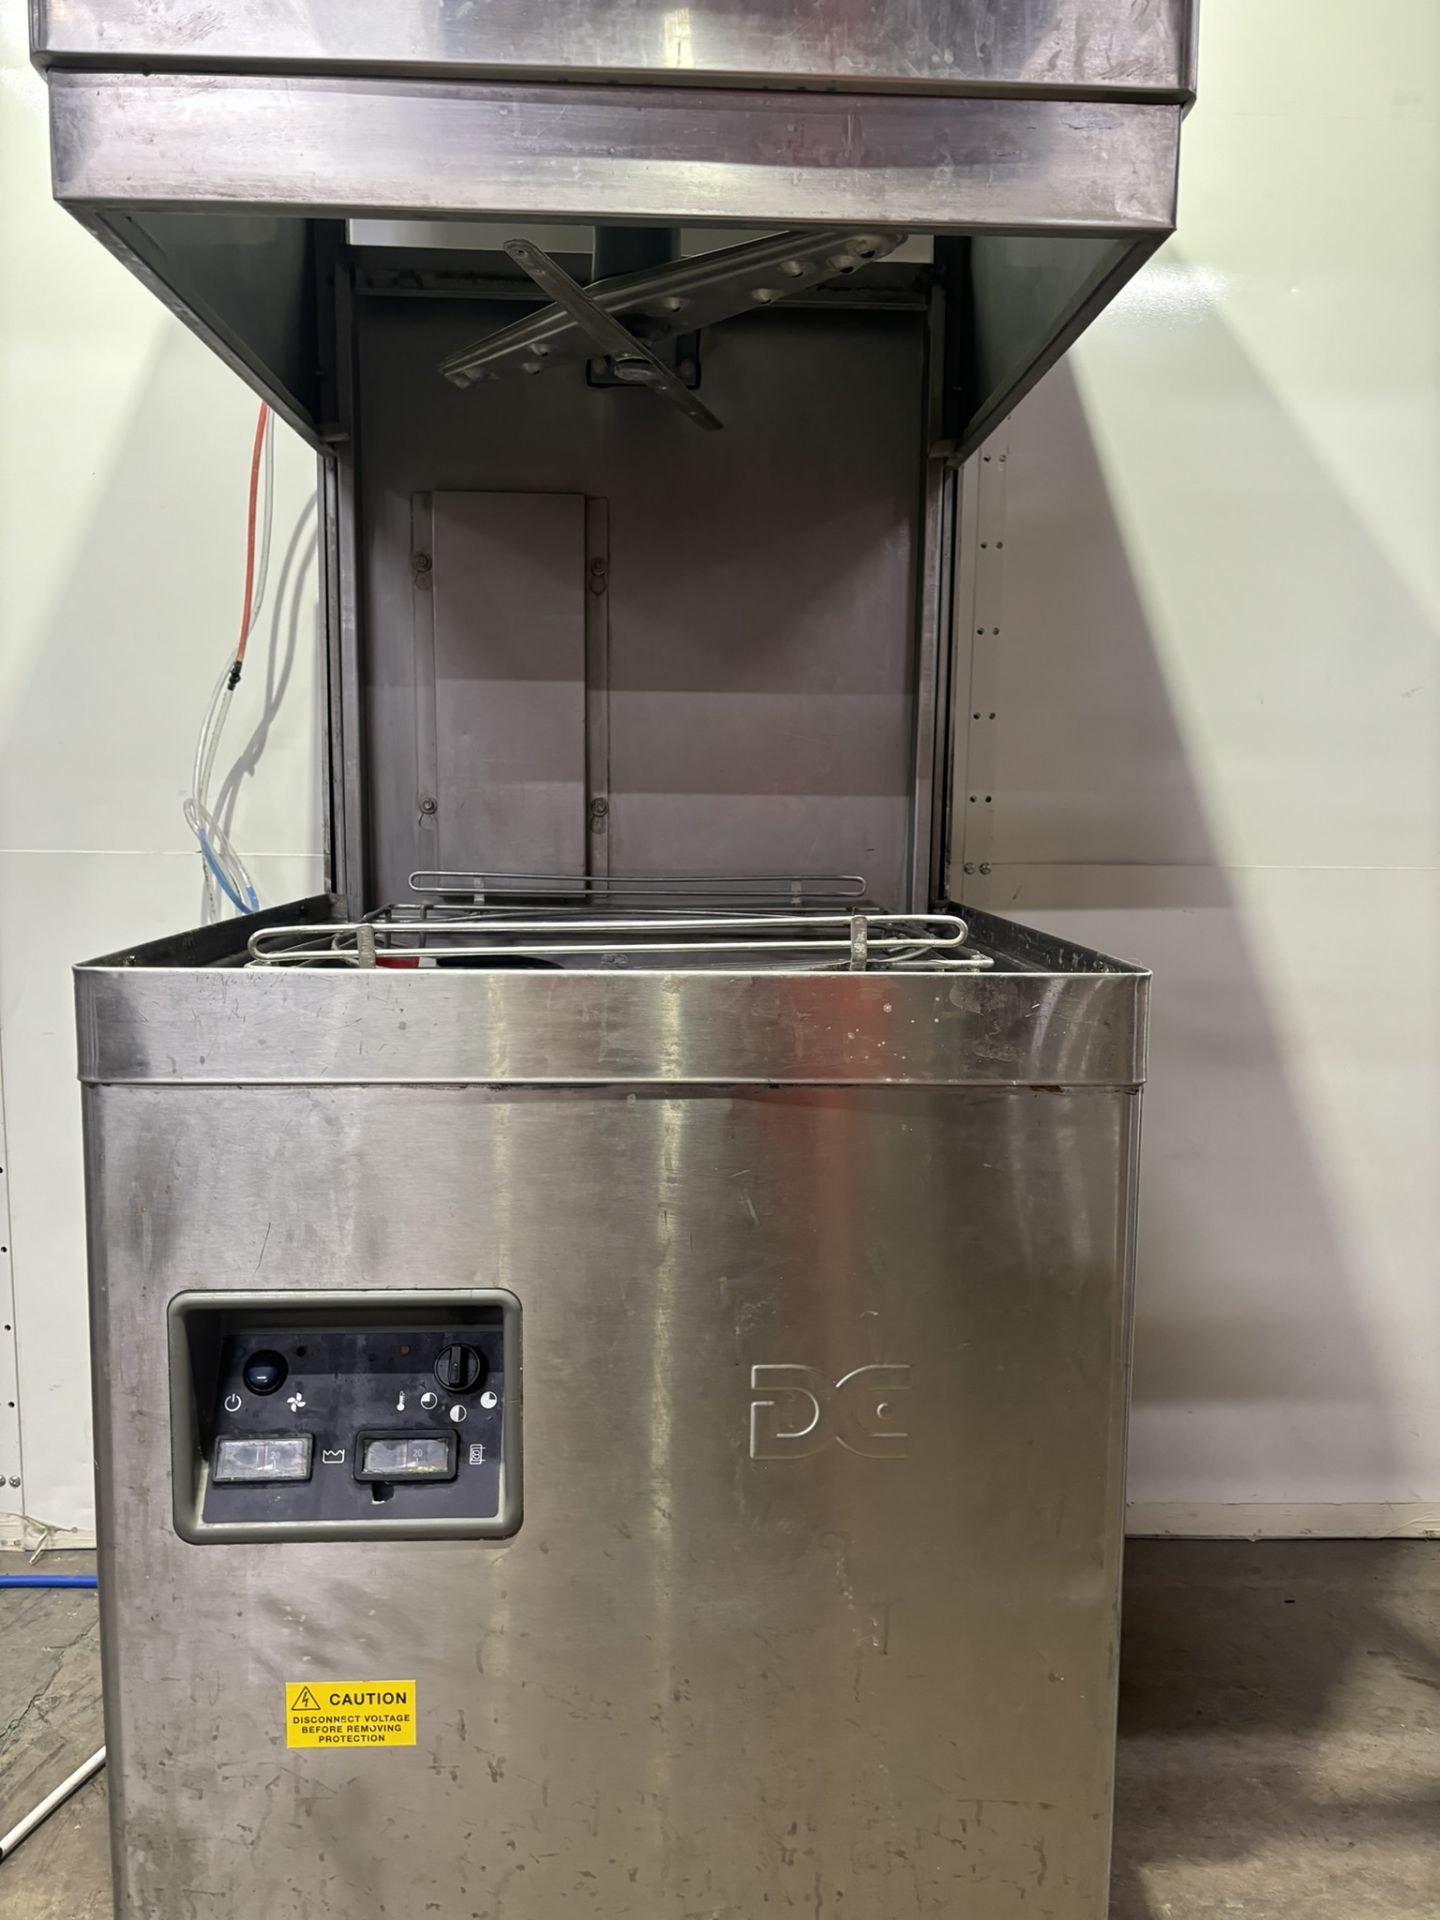 DC Premium Range Passthrough Dishwasher - Image 6 of 8